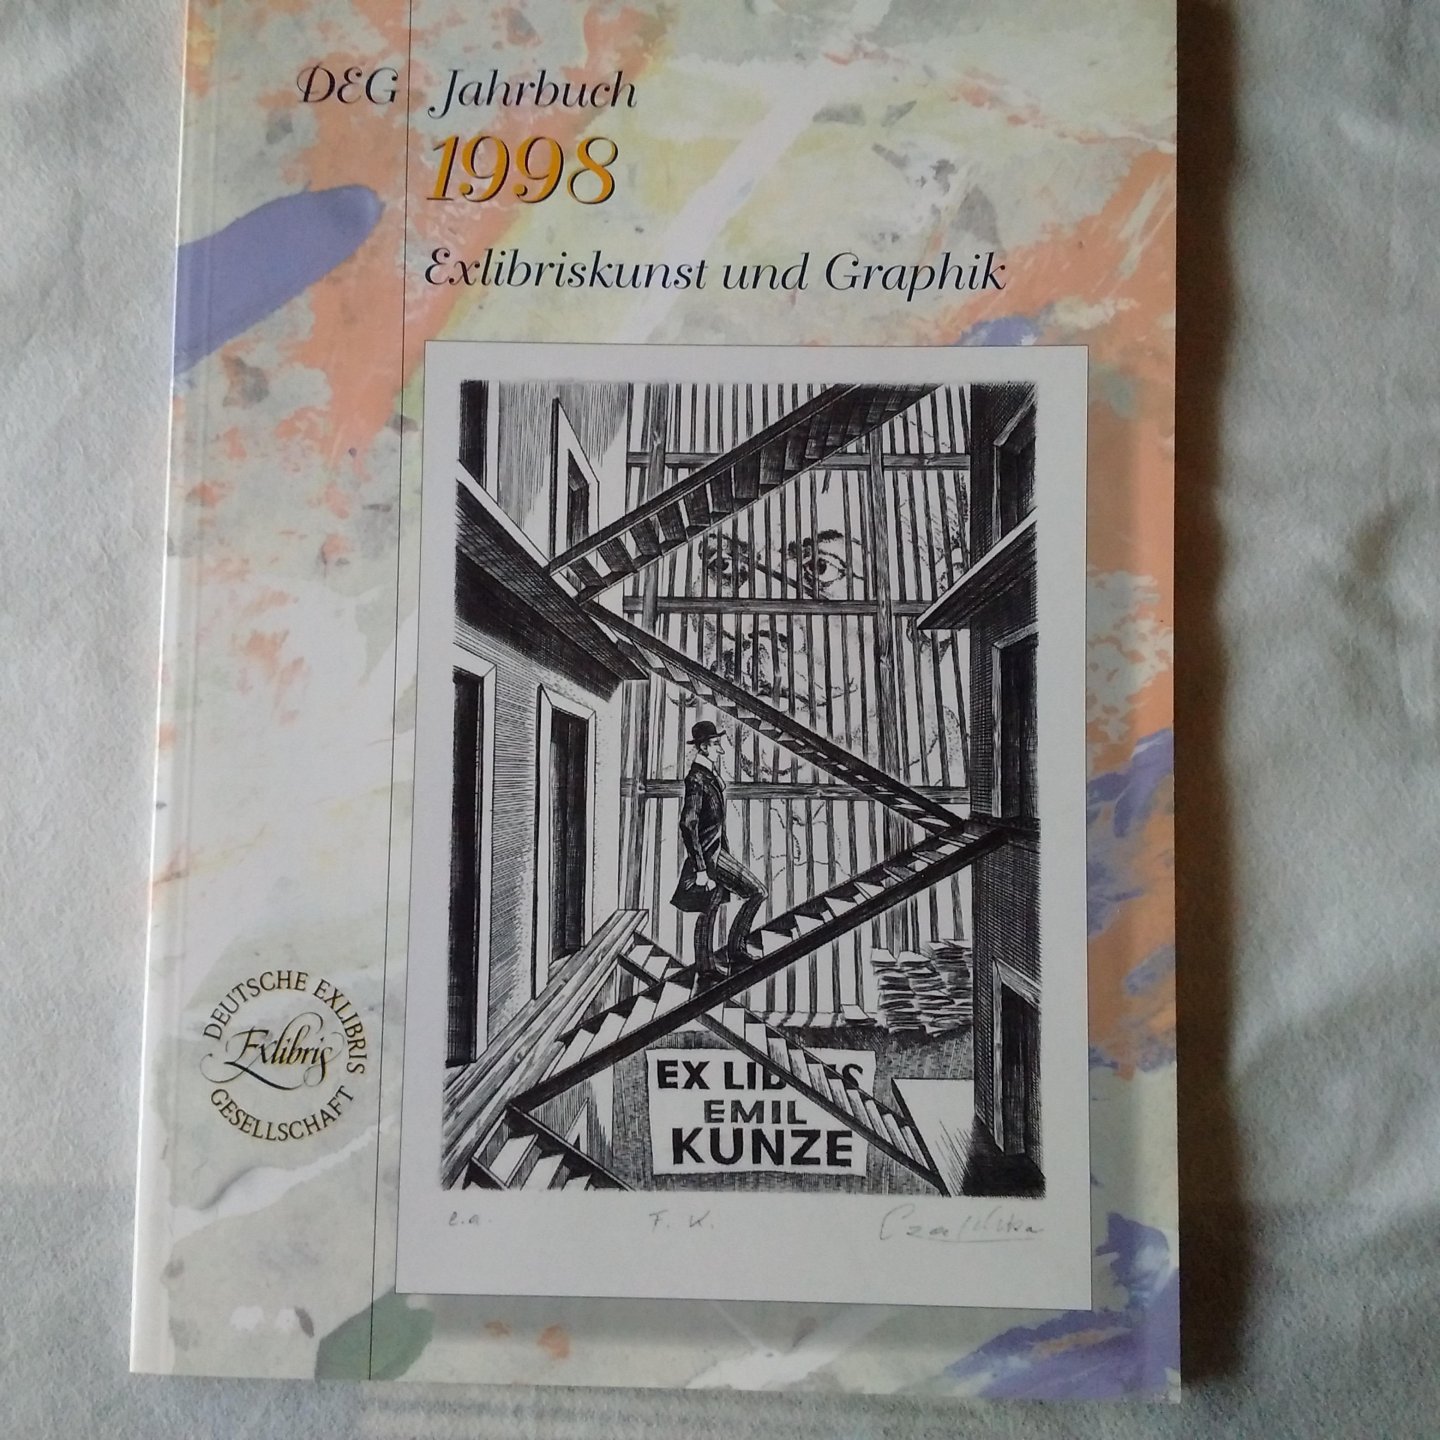 diverse auteurs - DEG Jahrbuch 1998 Exlibriskunst und Graphik